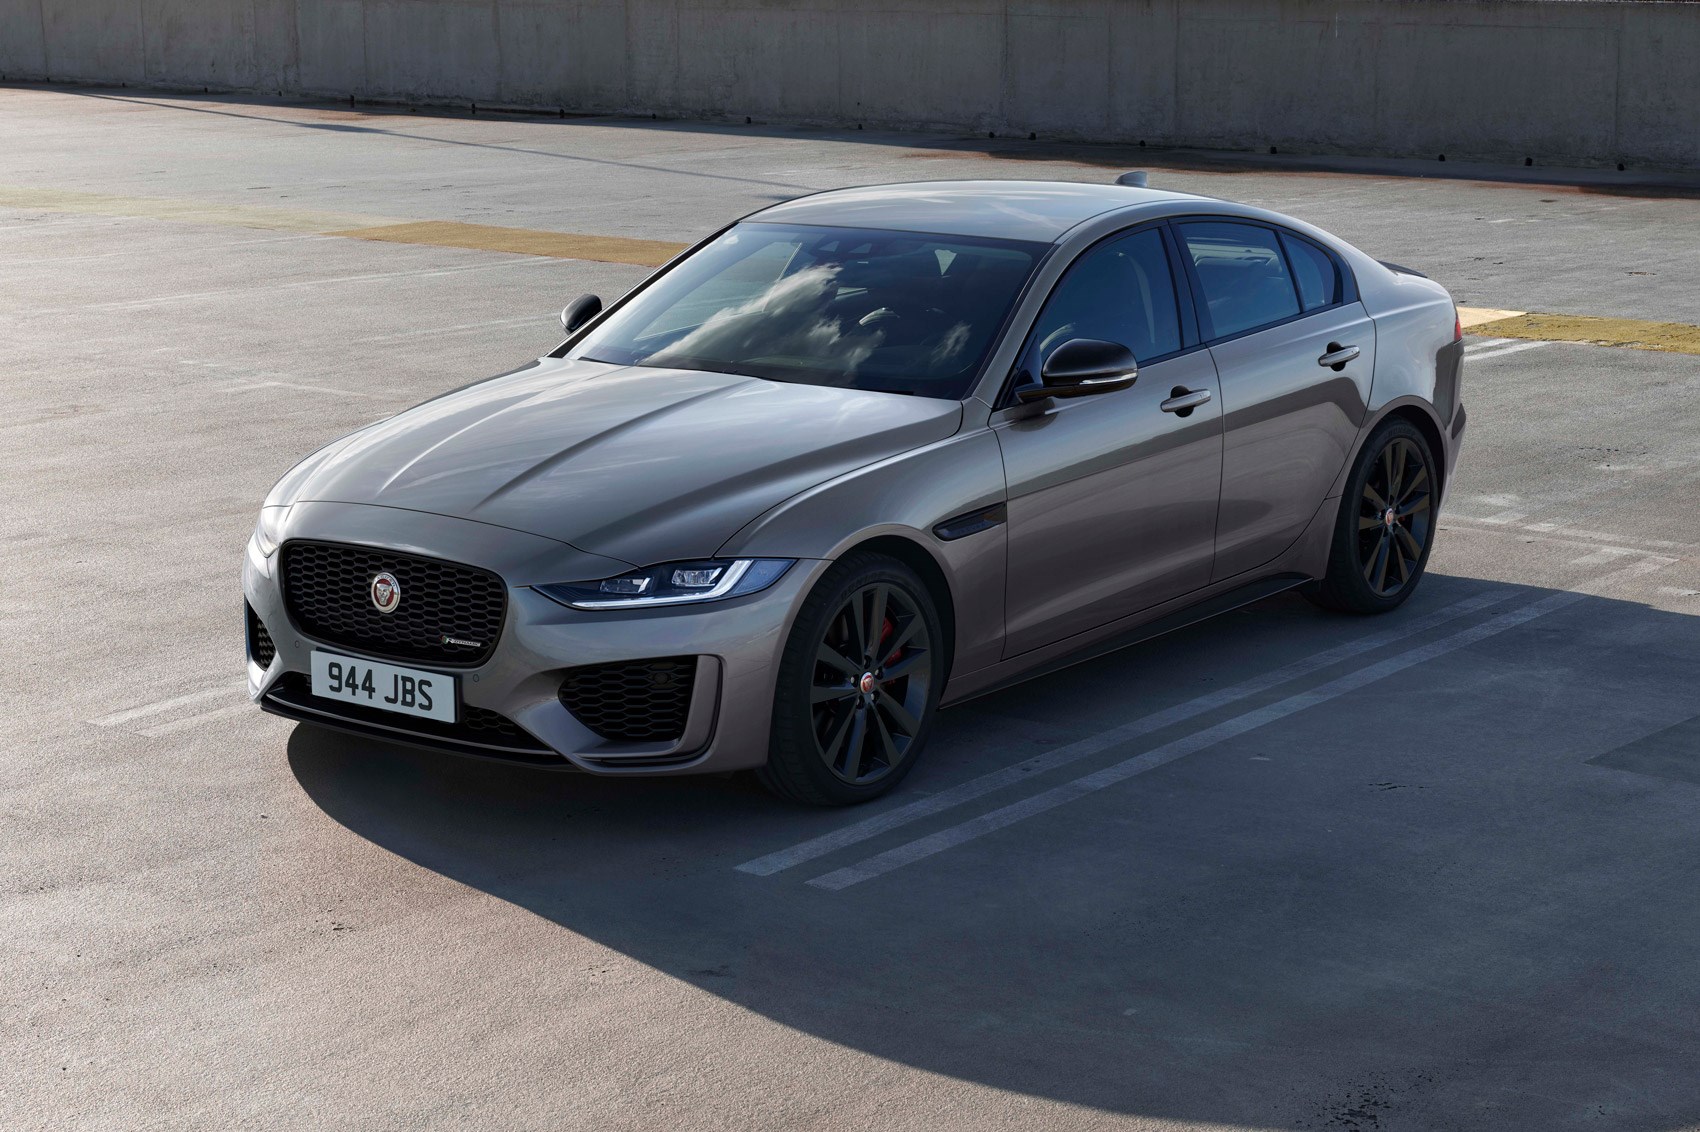 Jaguar XE (2020): news, prices, specs, details